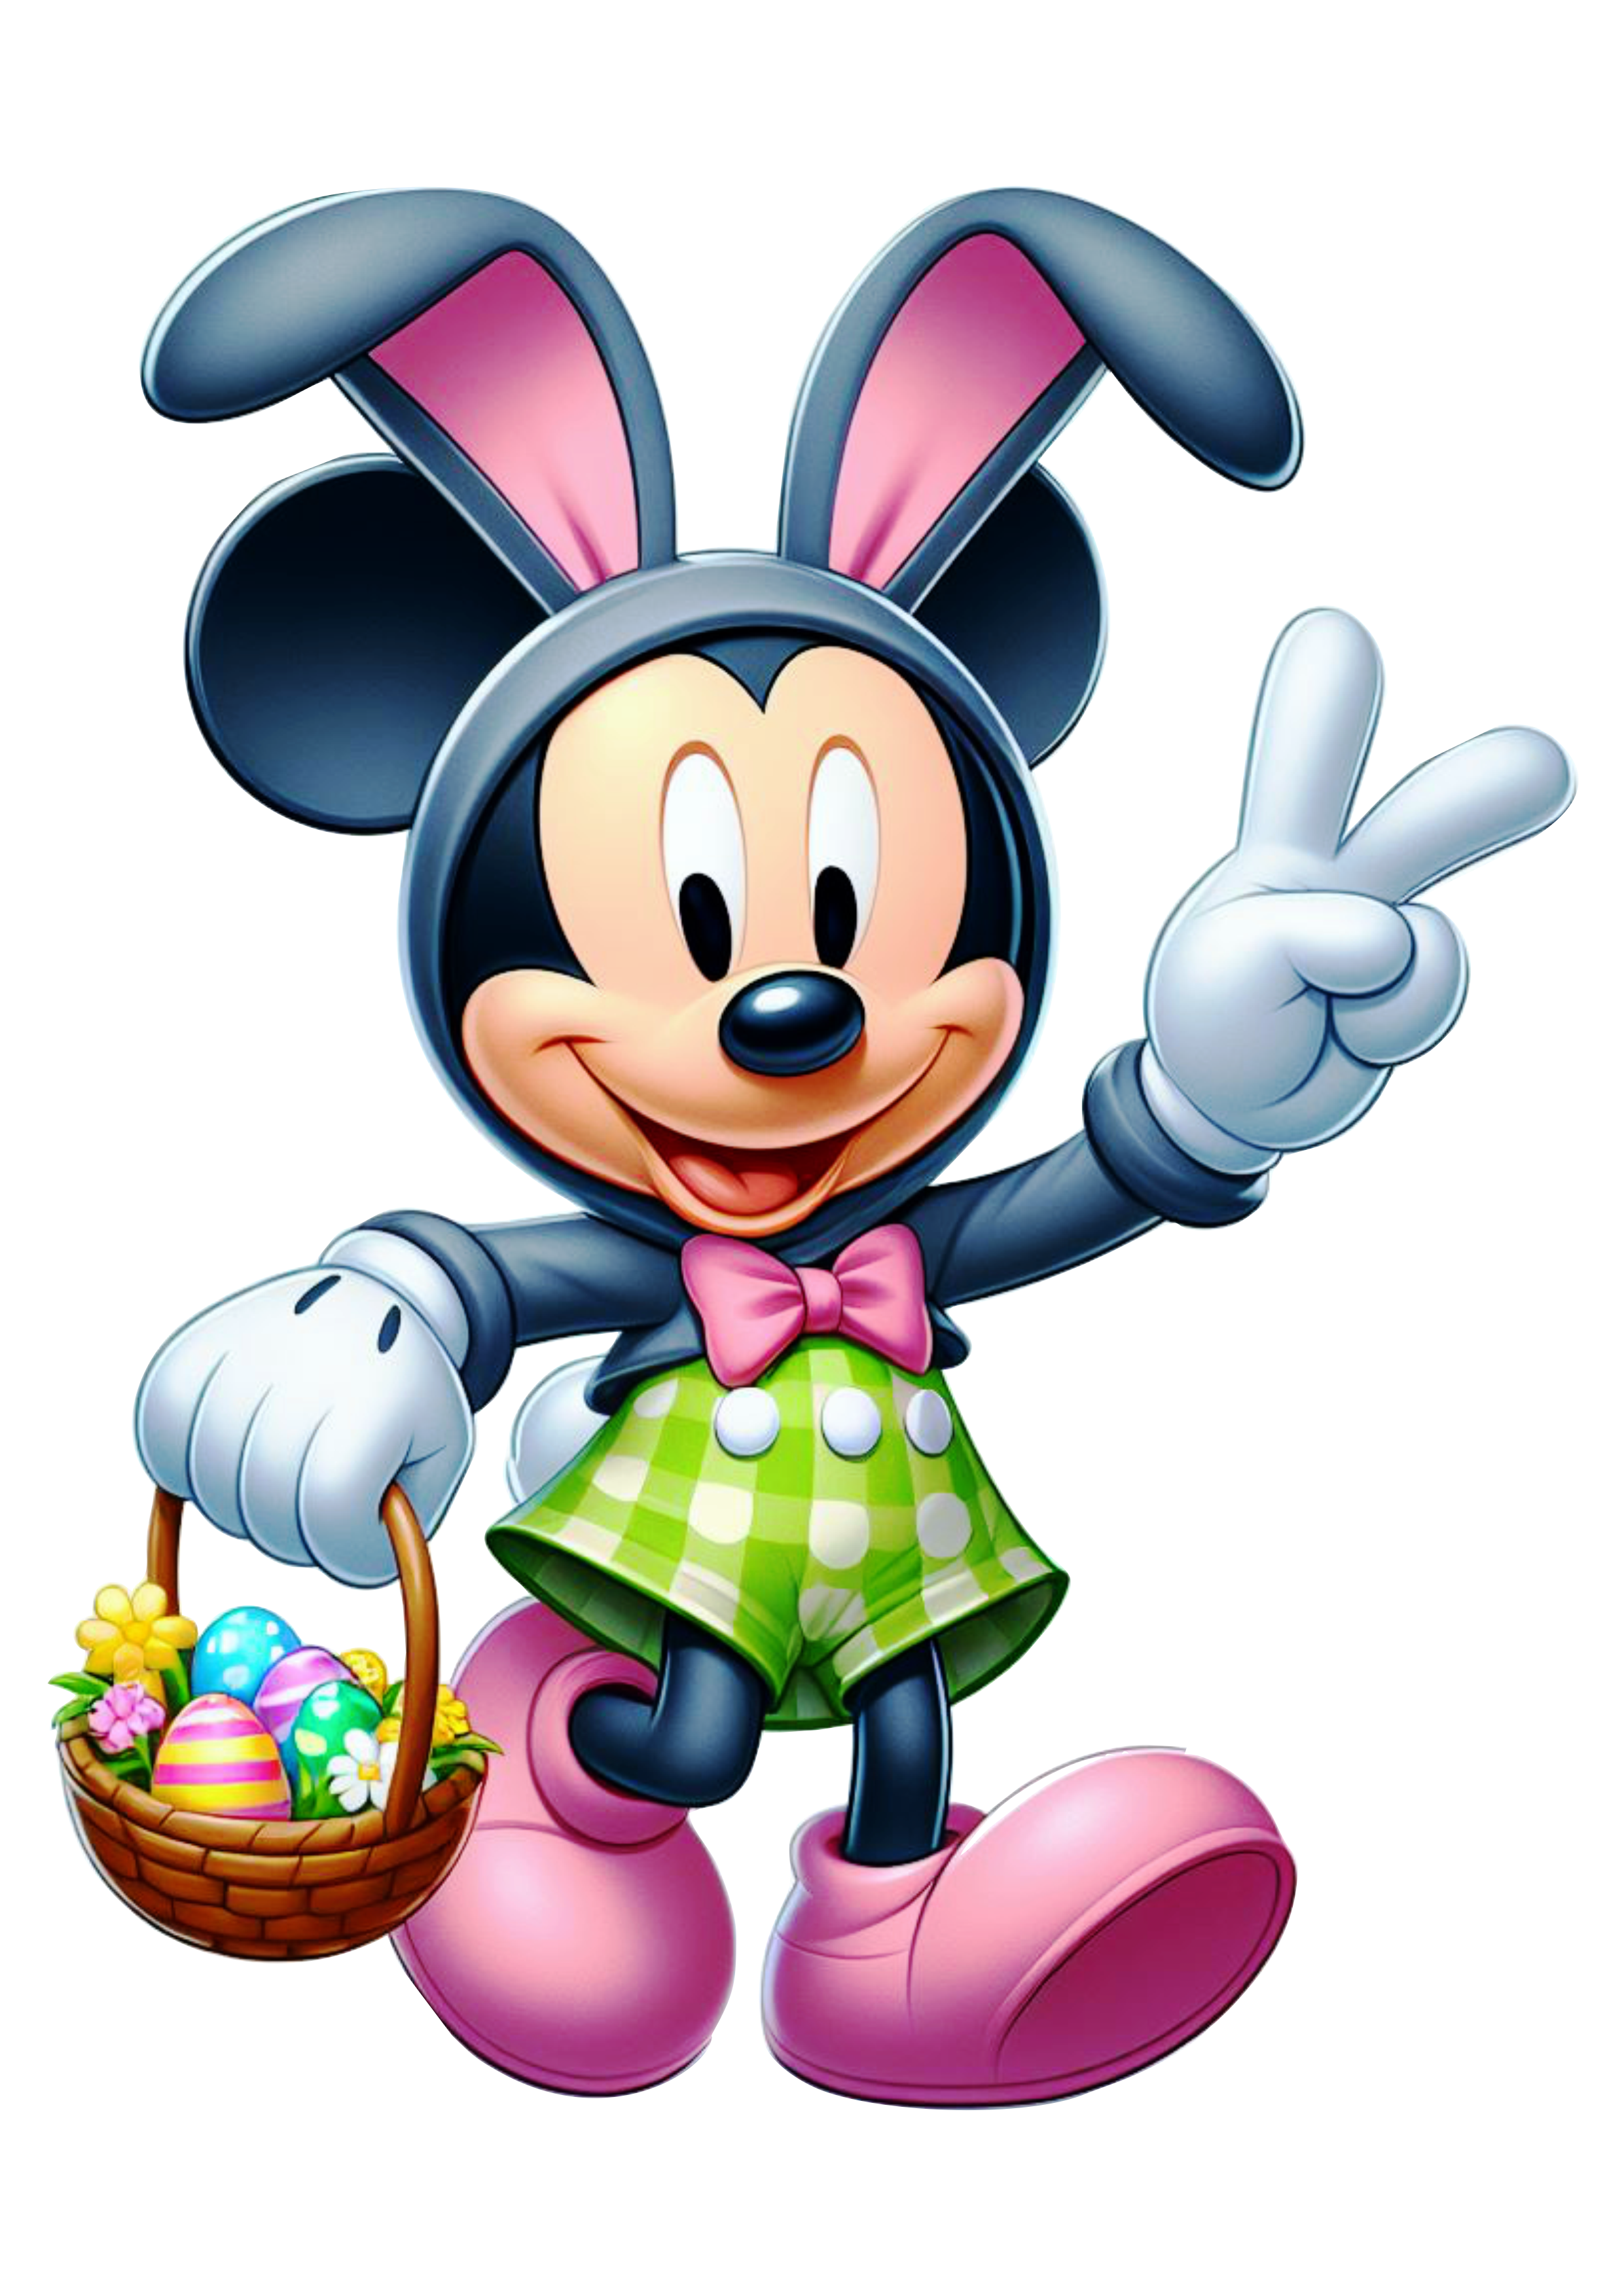 Imagens de páscoa decoração Mickey Mouse com orelhas de coelhinho desenho infantil clipart png vetor